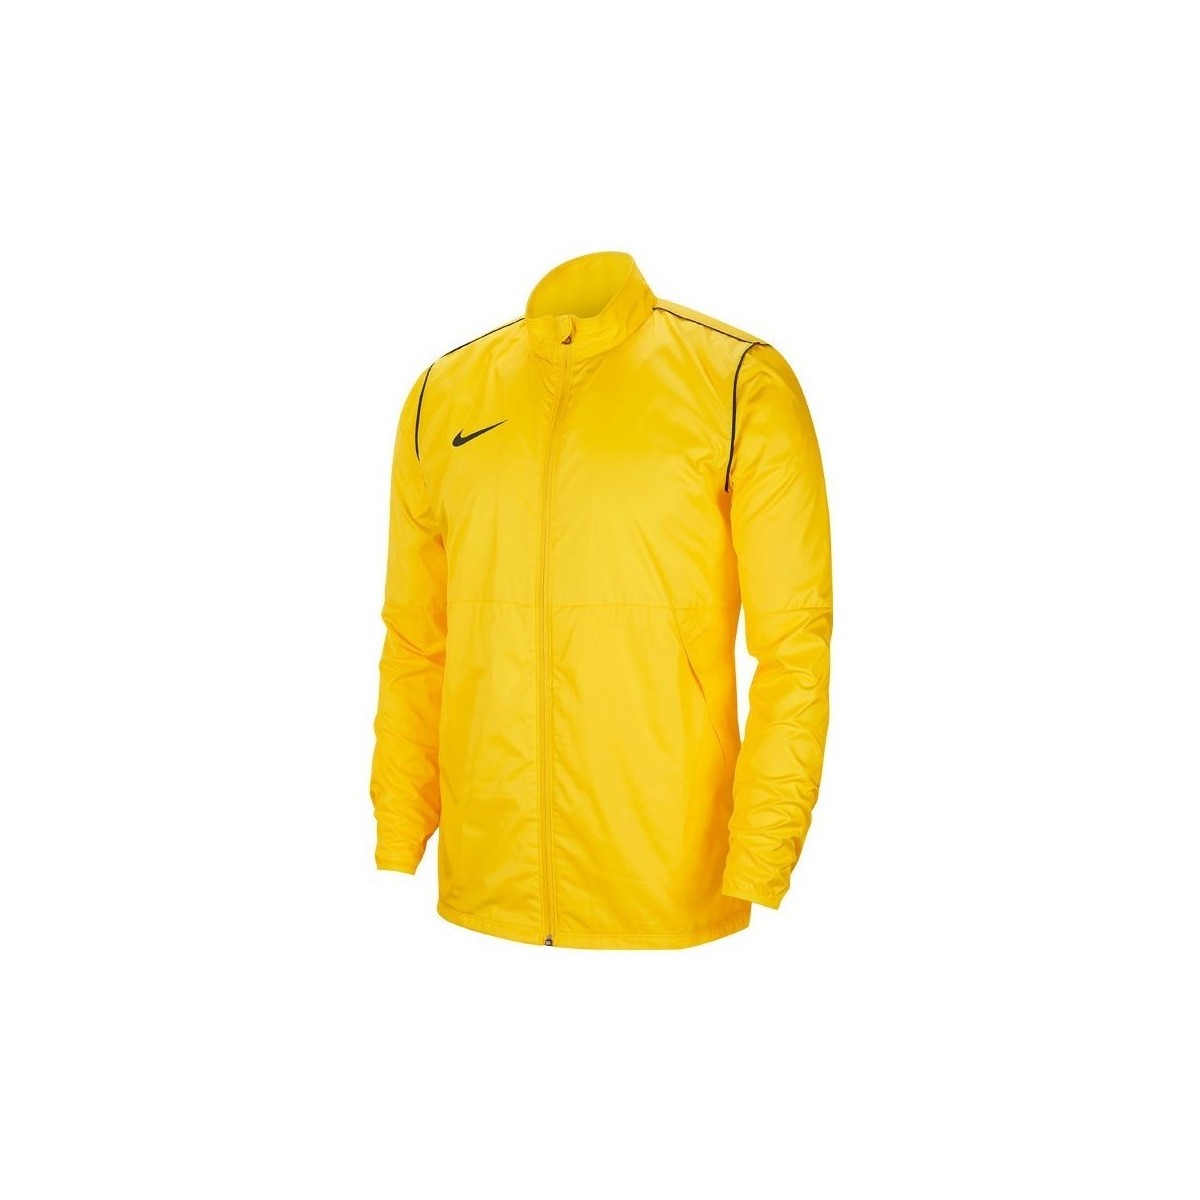 Kleidung Herren Jacken Nike Park 20 Repel Gelb